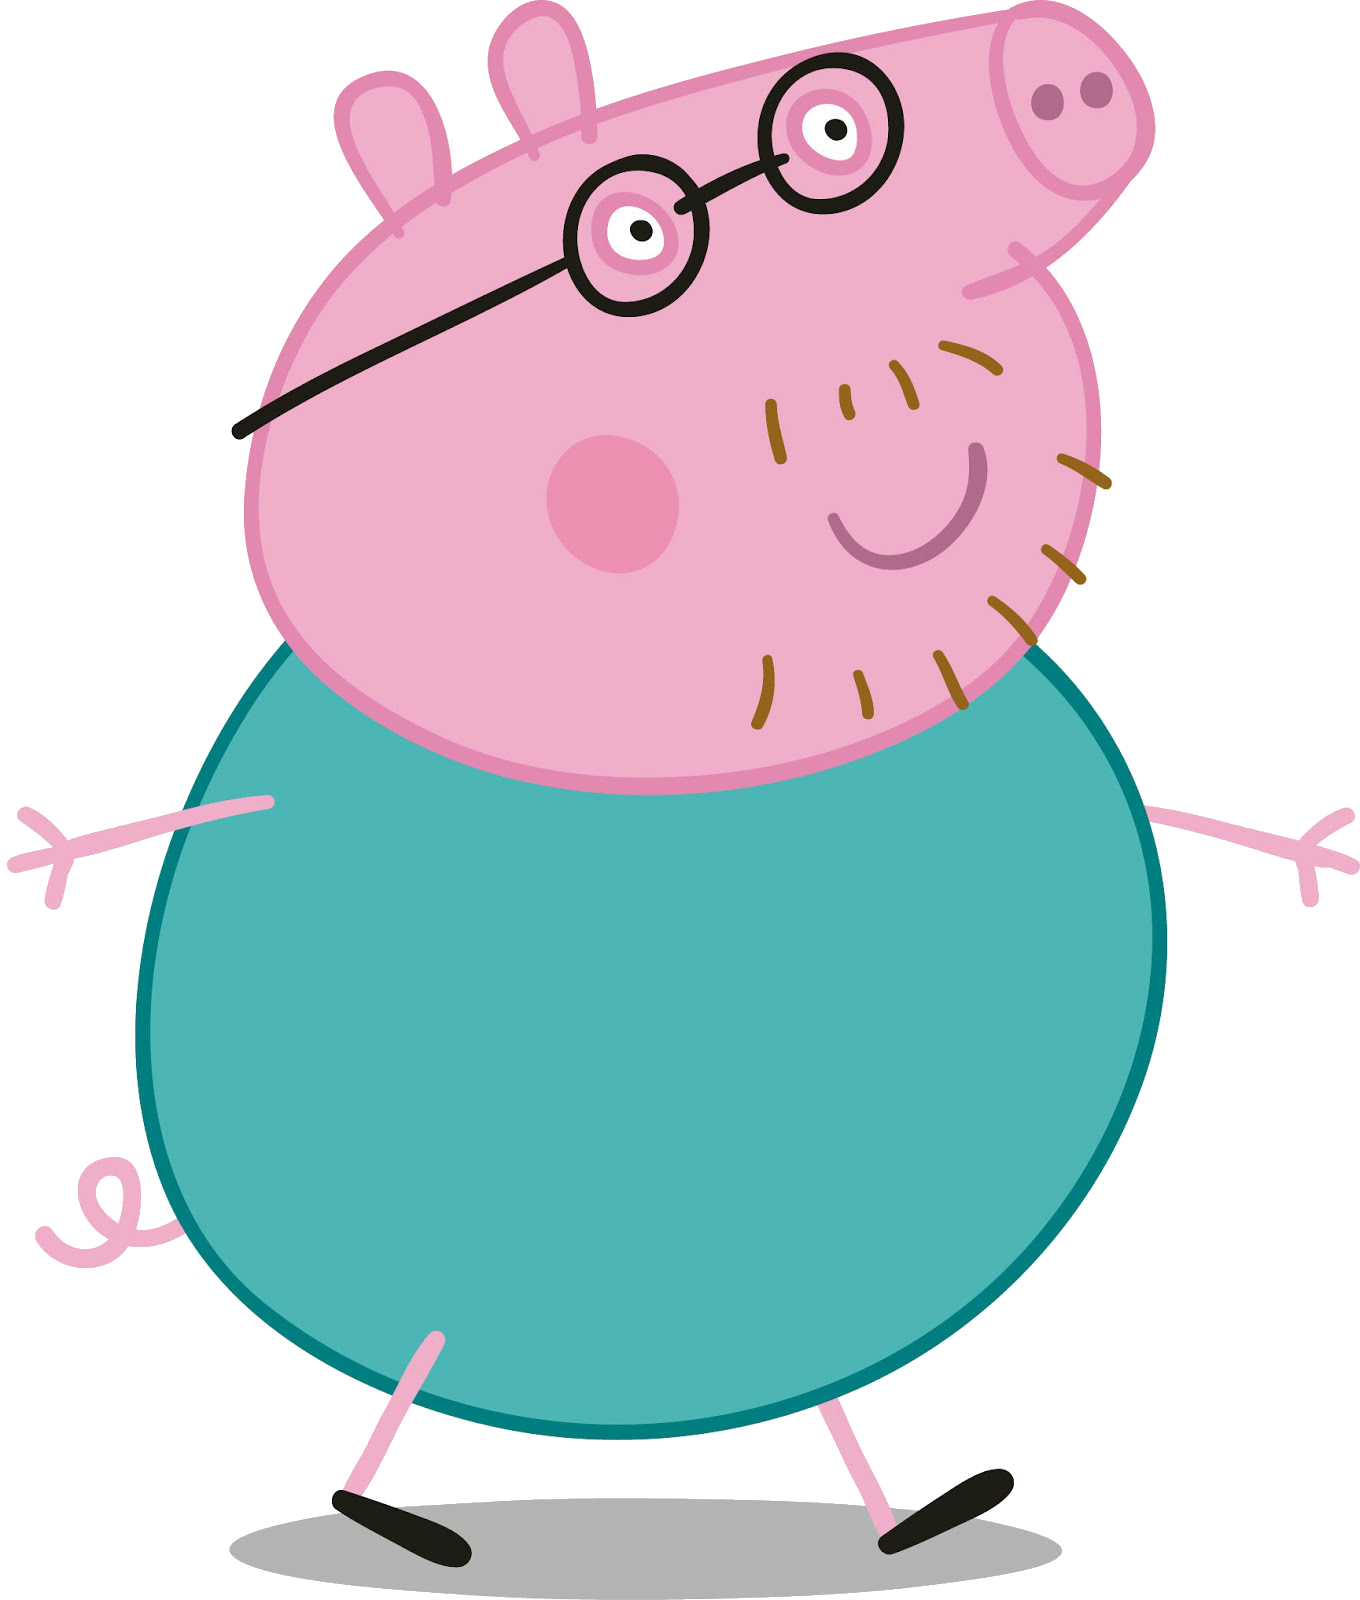 Детское постельное белье Свинка Пеппа (Peppa Pig) купить 1.5 спальное :